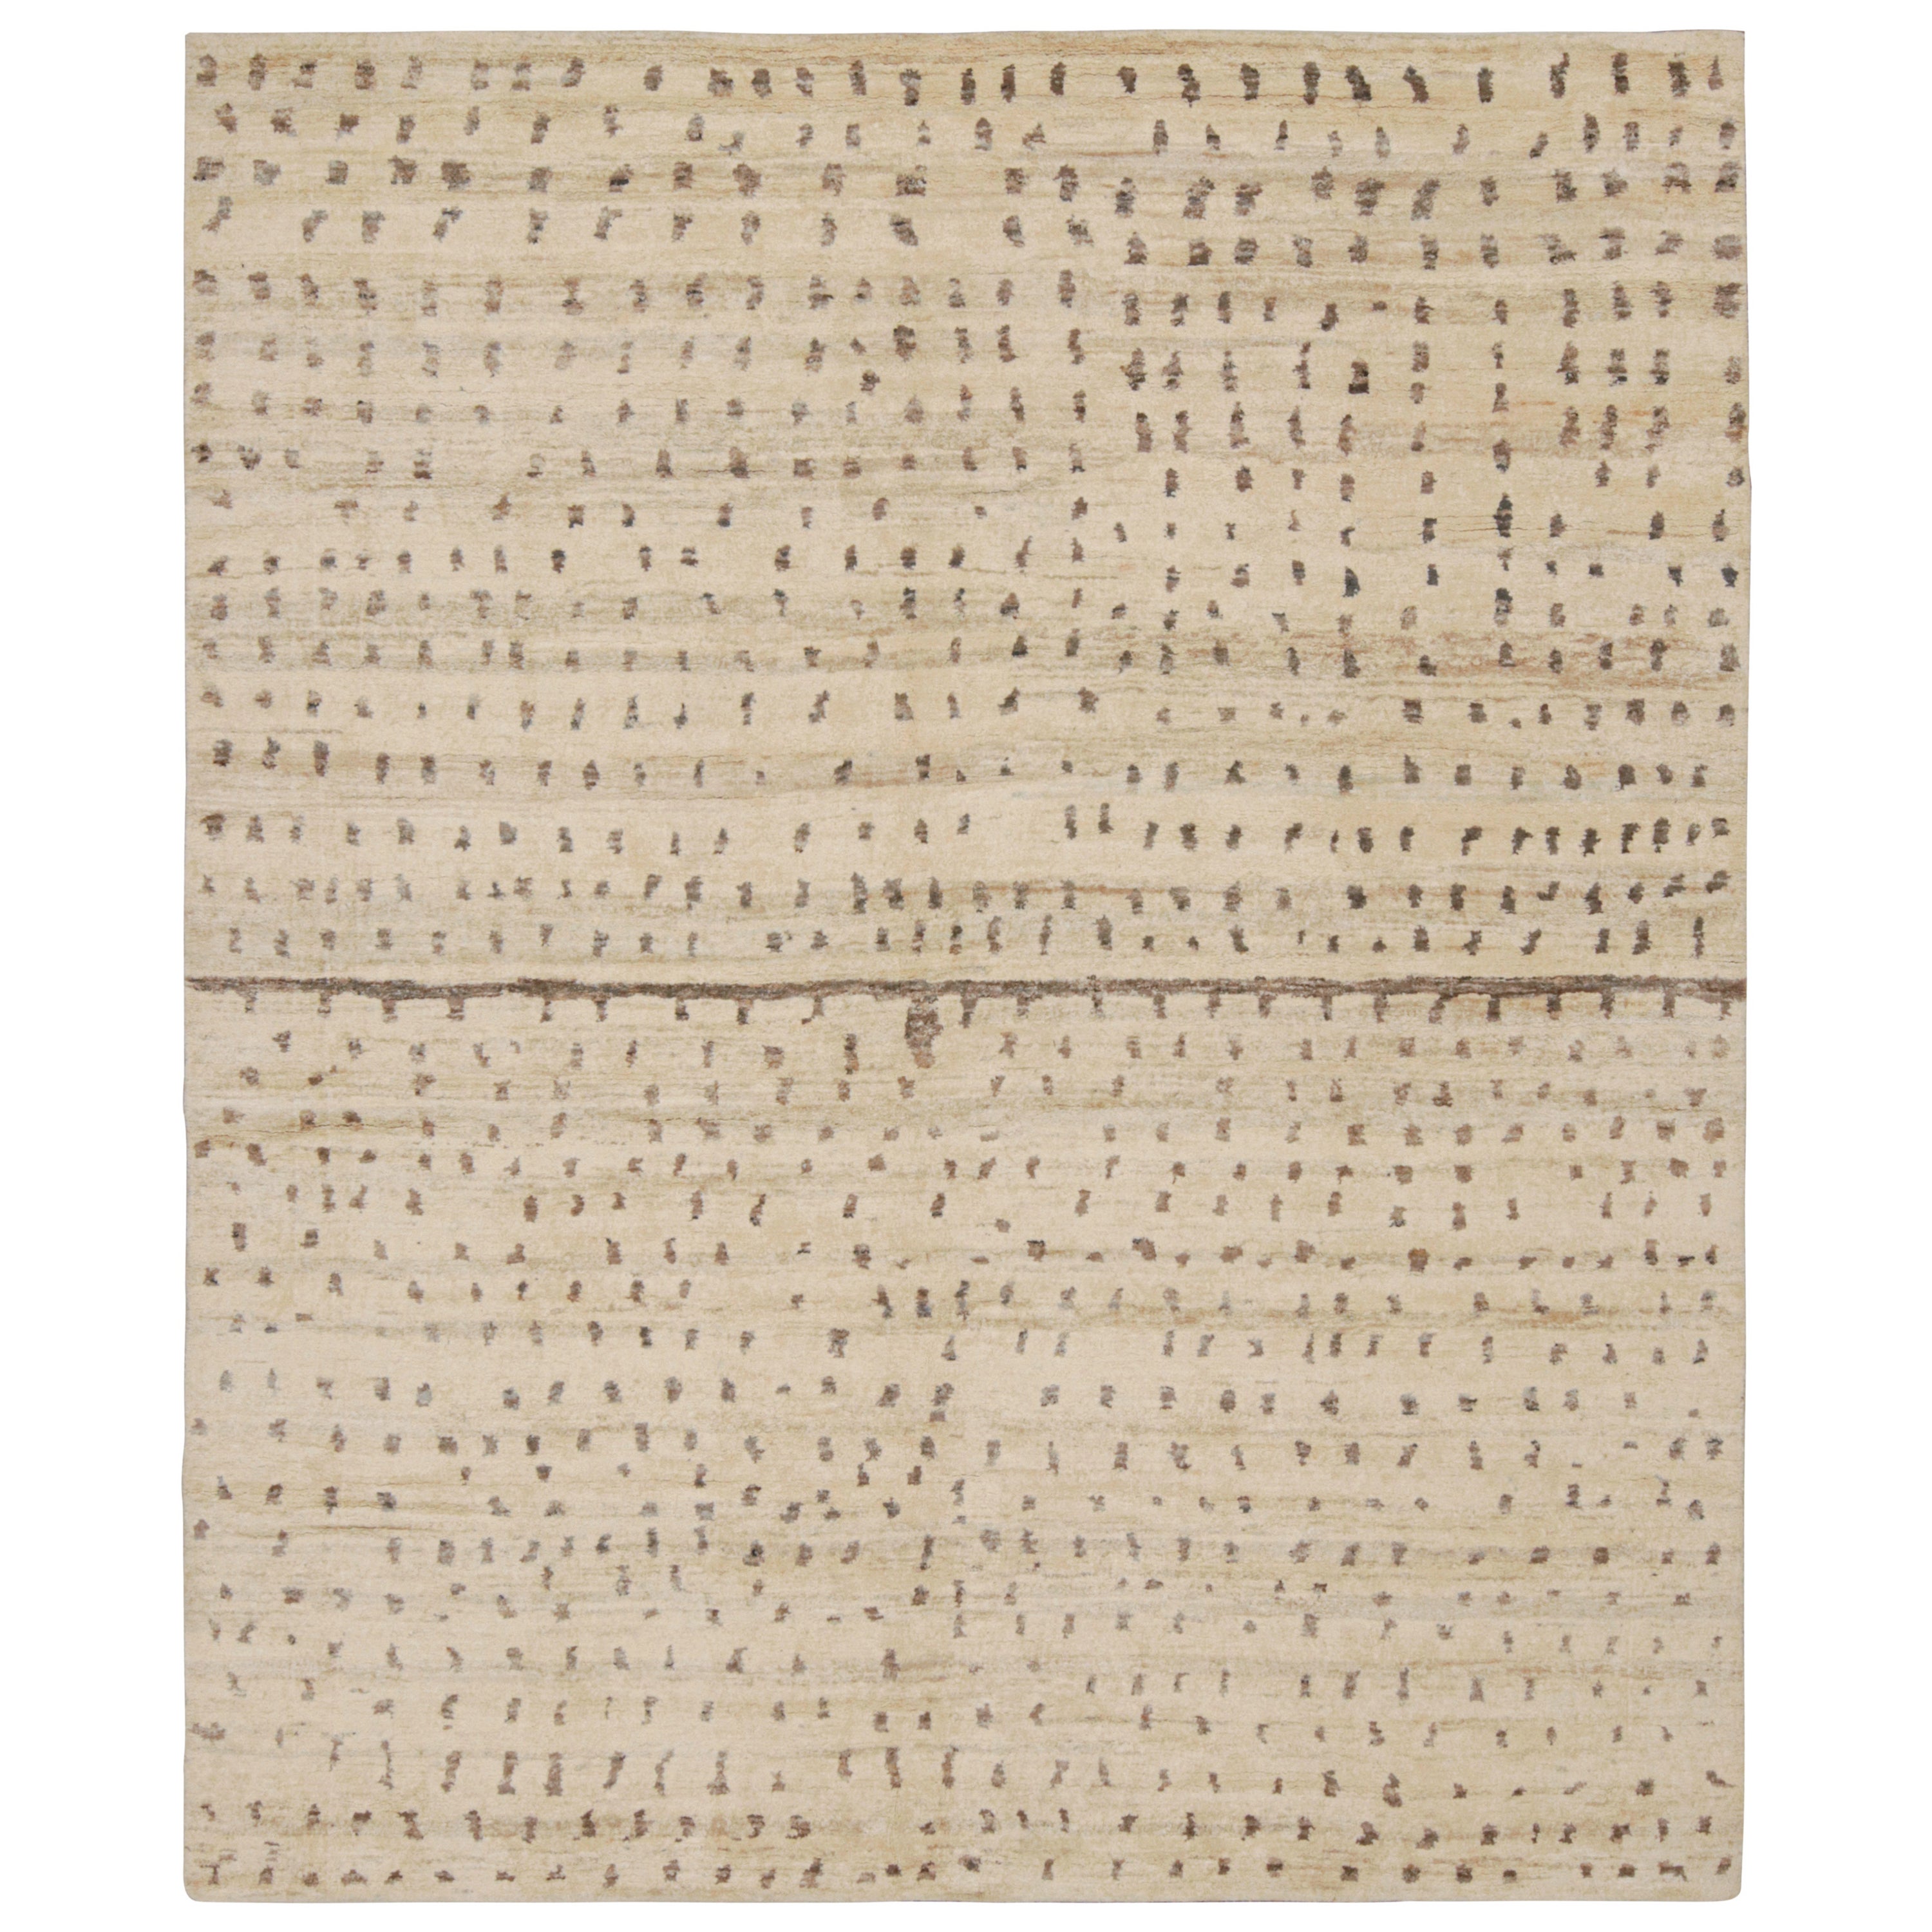 Rug & Kilim's Modern Teppich in Beige und Brown Abstrakte Dots Muster